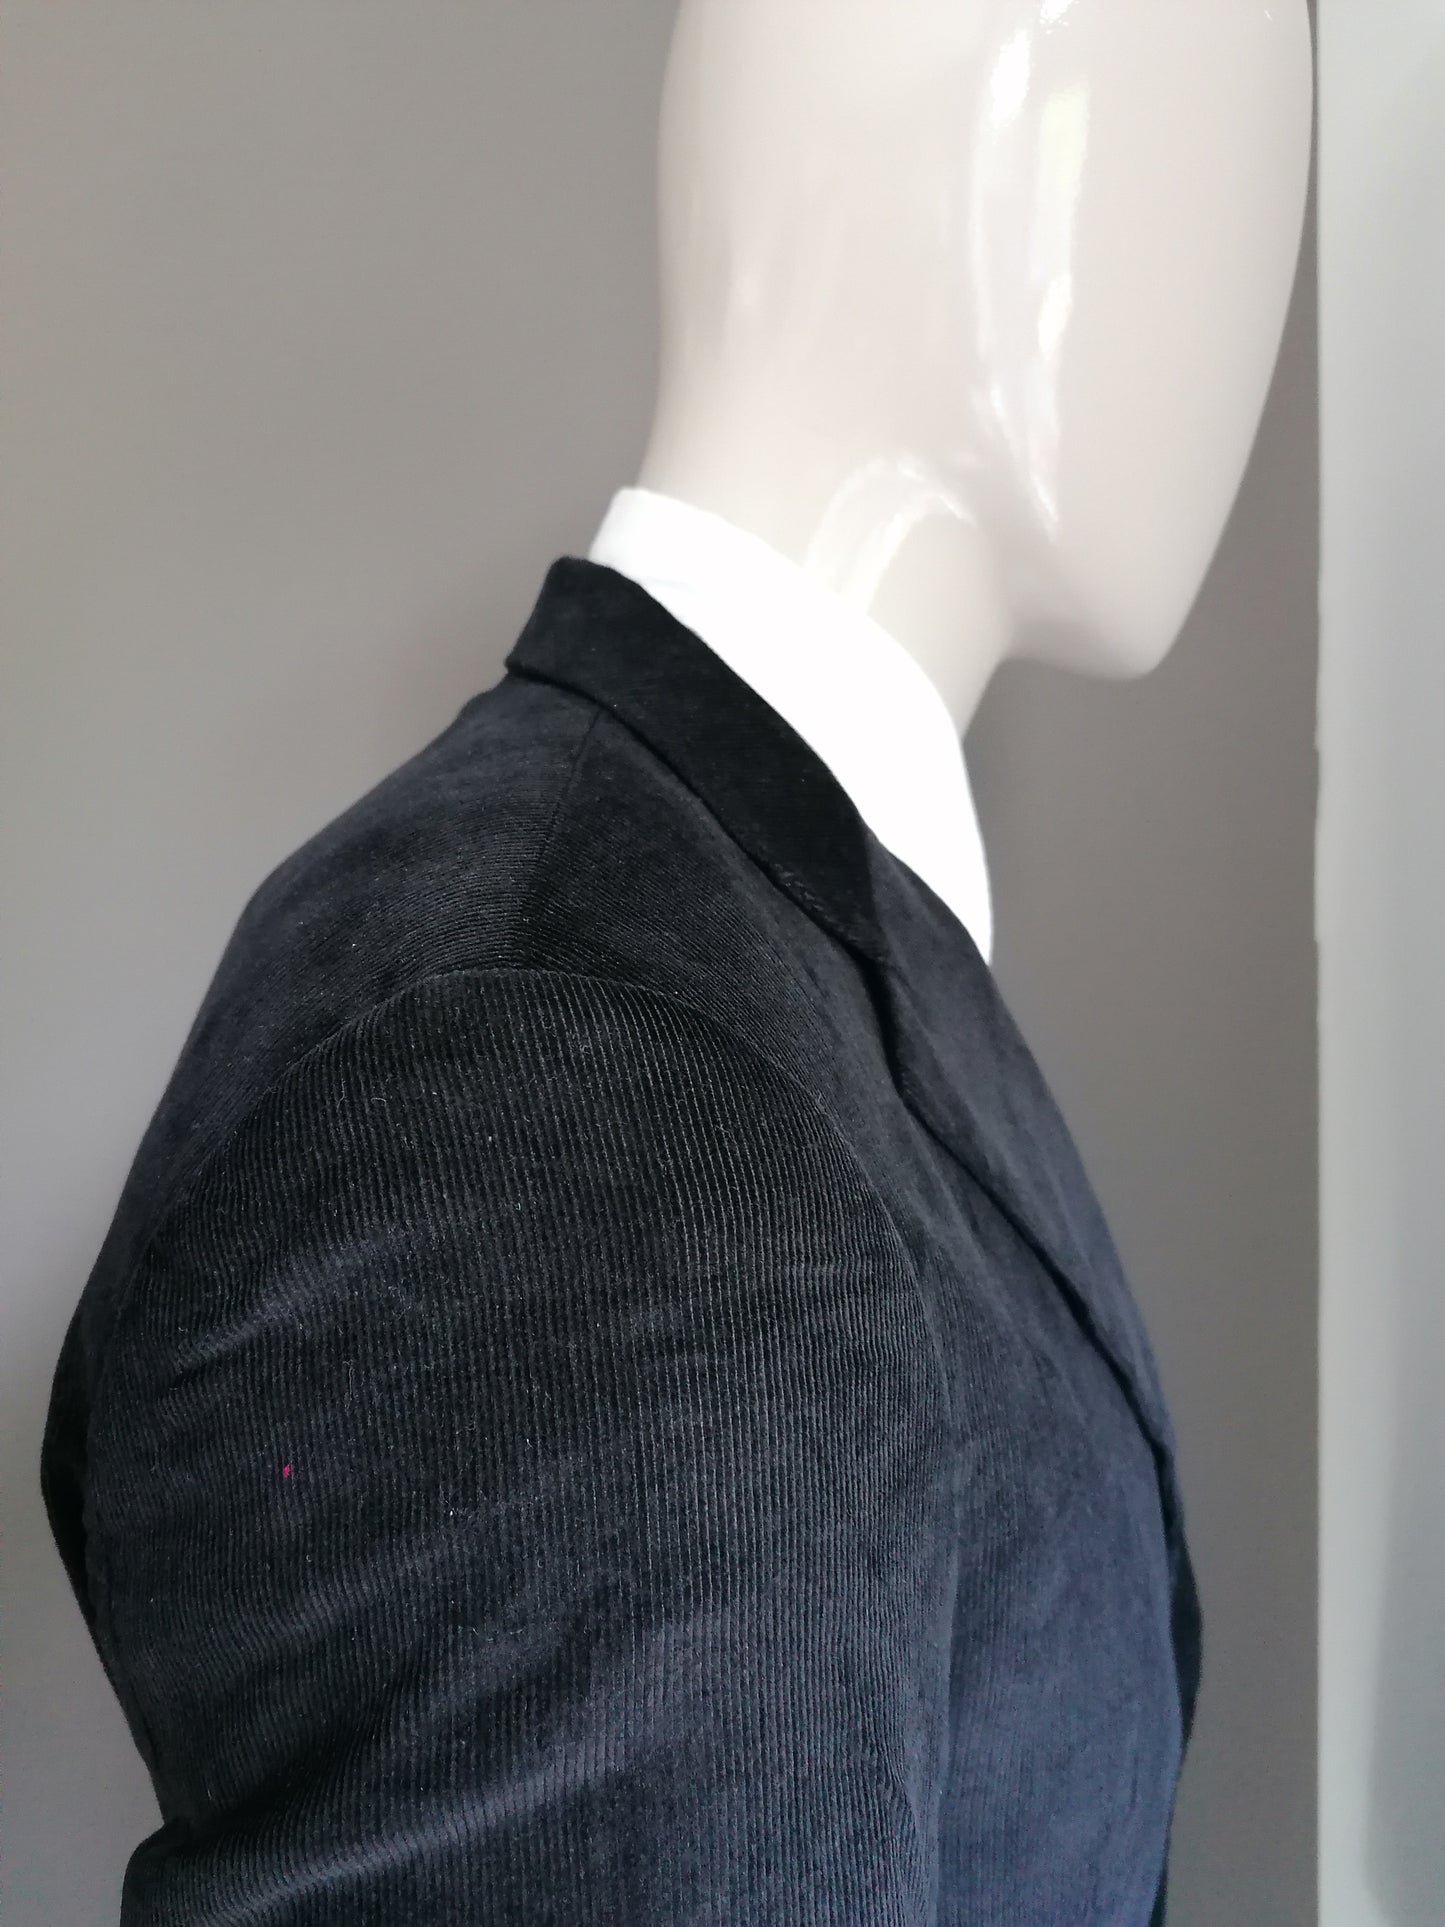 Disfraz de costilla de piedras. Bonita costilla. Color negro. Tamaño 48 (chaqueta) y talla 46 (pantalones)